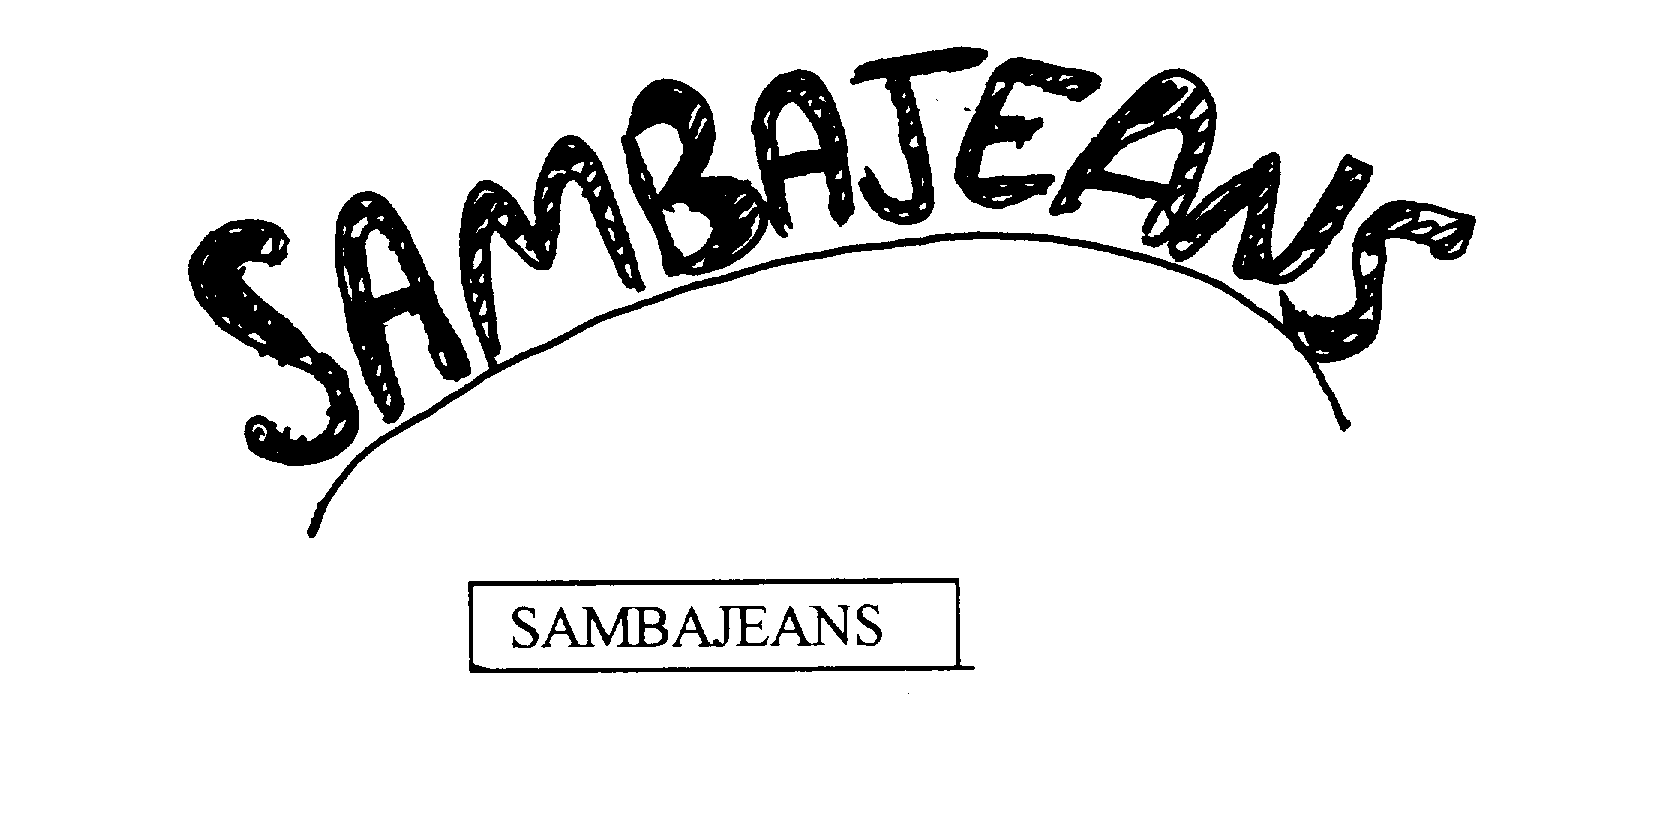  SAMBAJEANS